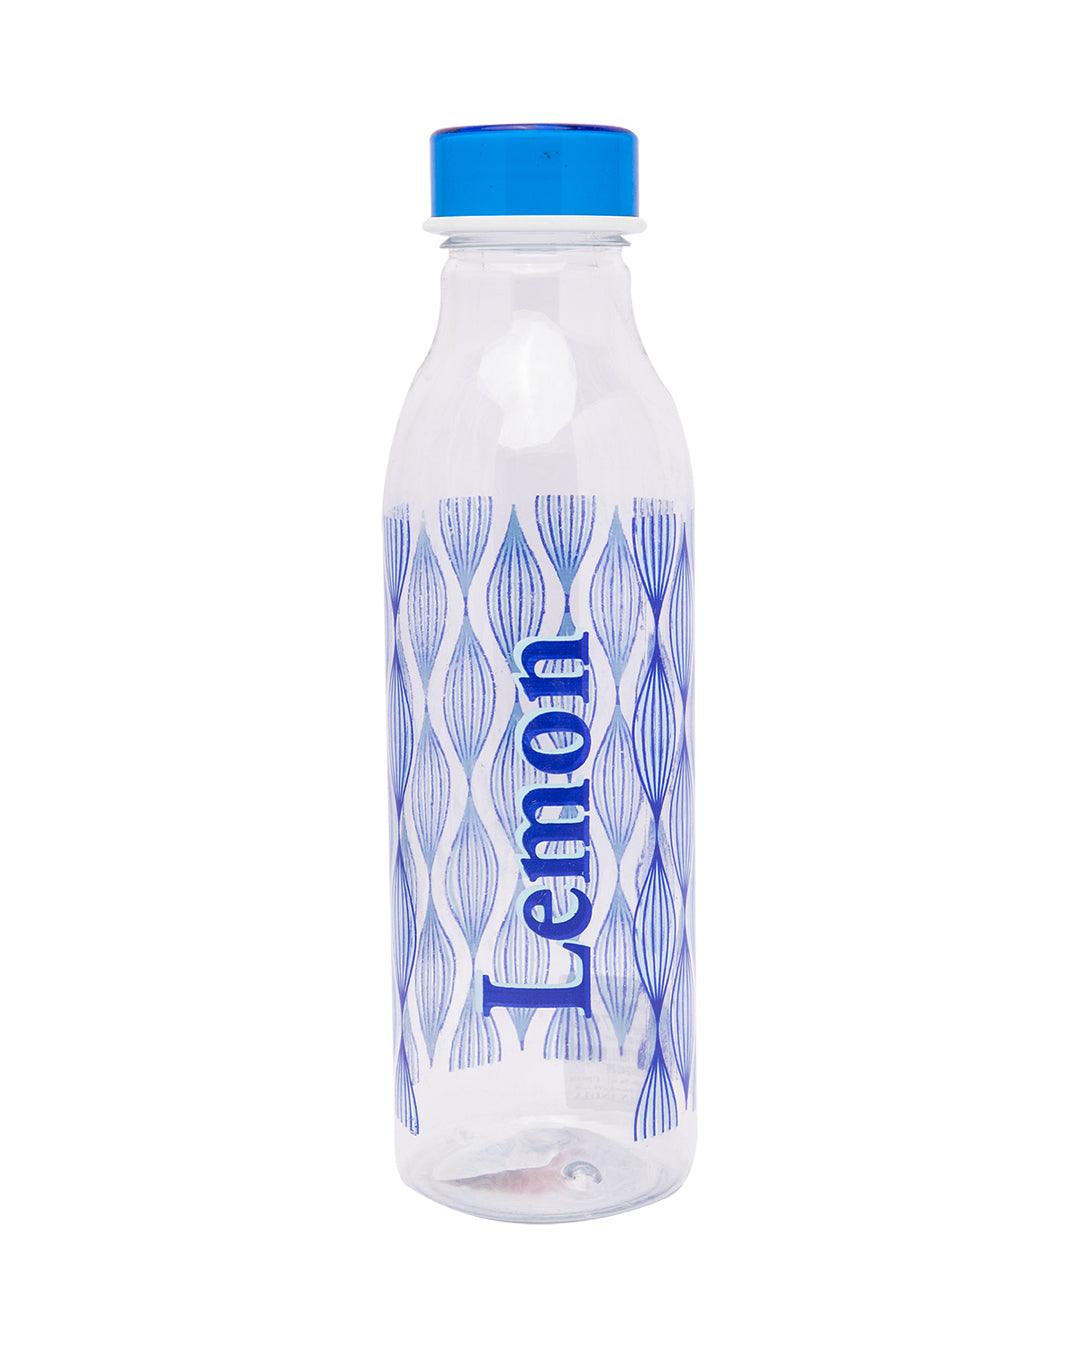 Lemon Bottles, Blue, Plastic, Set of 4, 1 Litre - MARKET 99